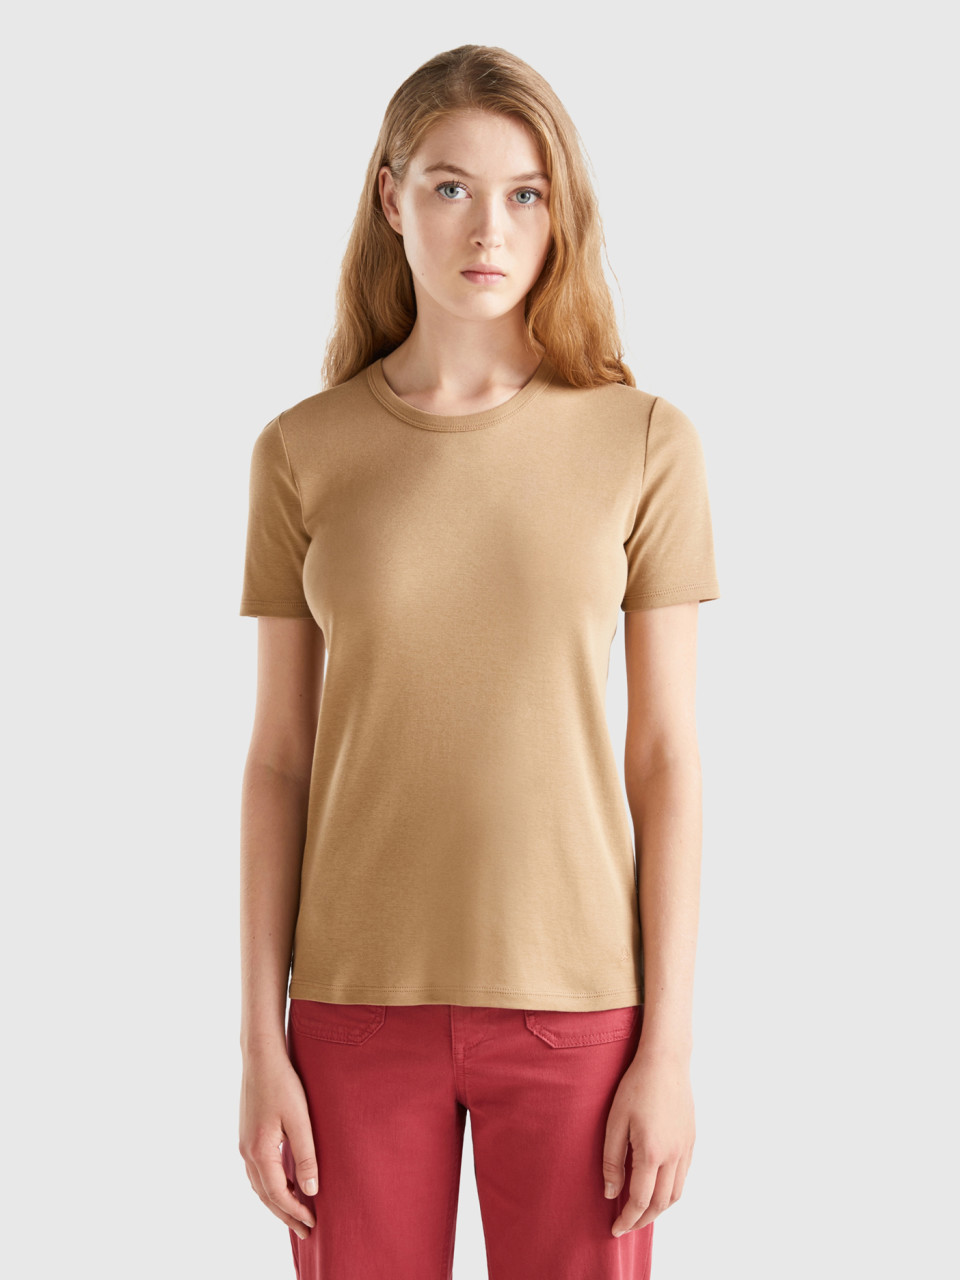 Benetton, Long Fiber Cotton T-shirt, Camel, Women